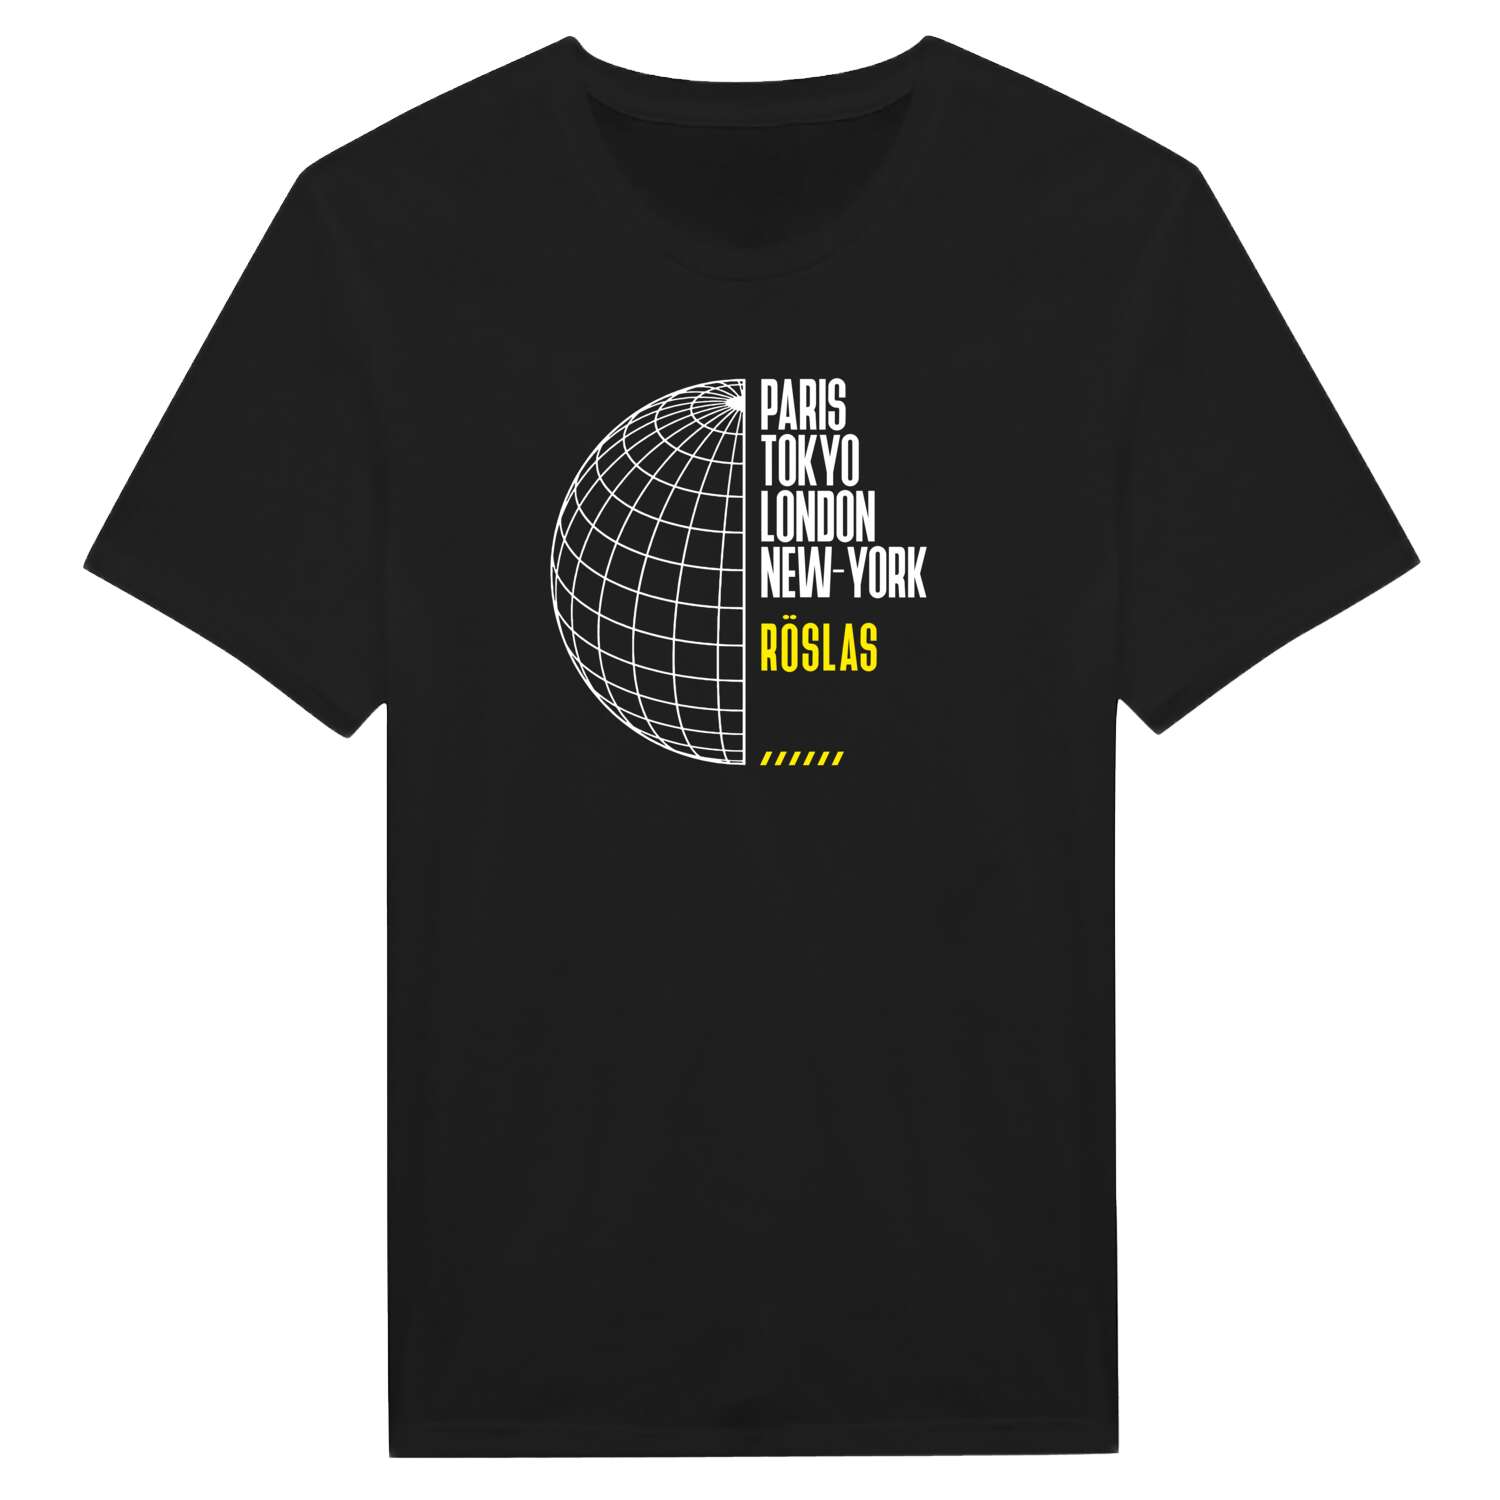 Röslas T-Shirt »Paris Tokyo London«